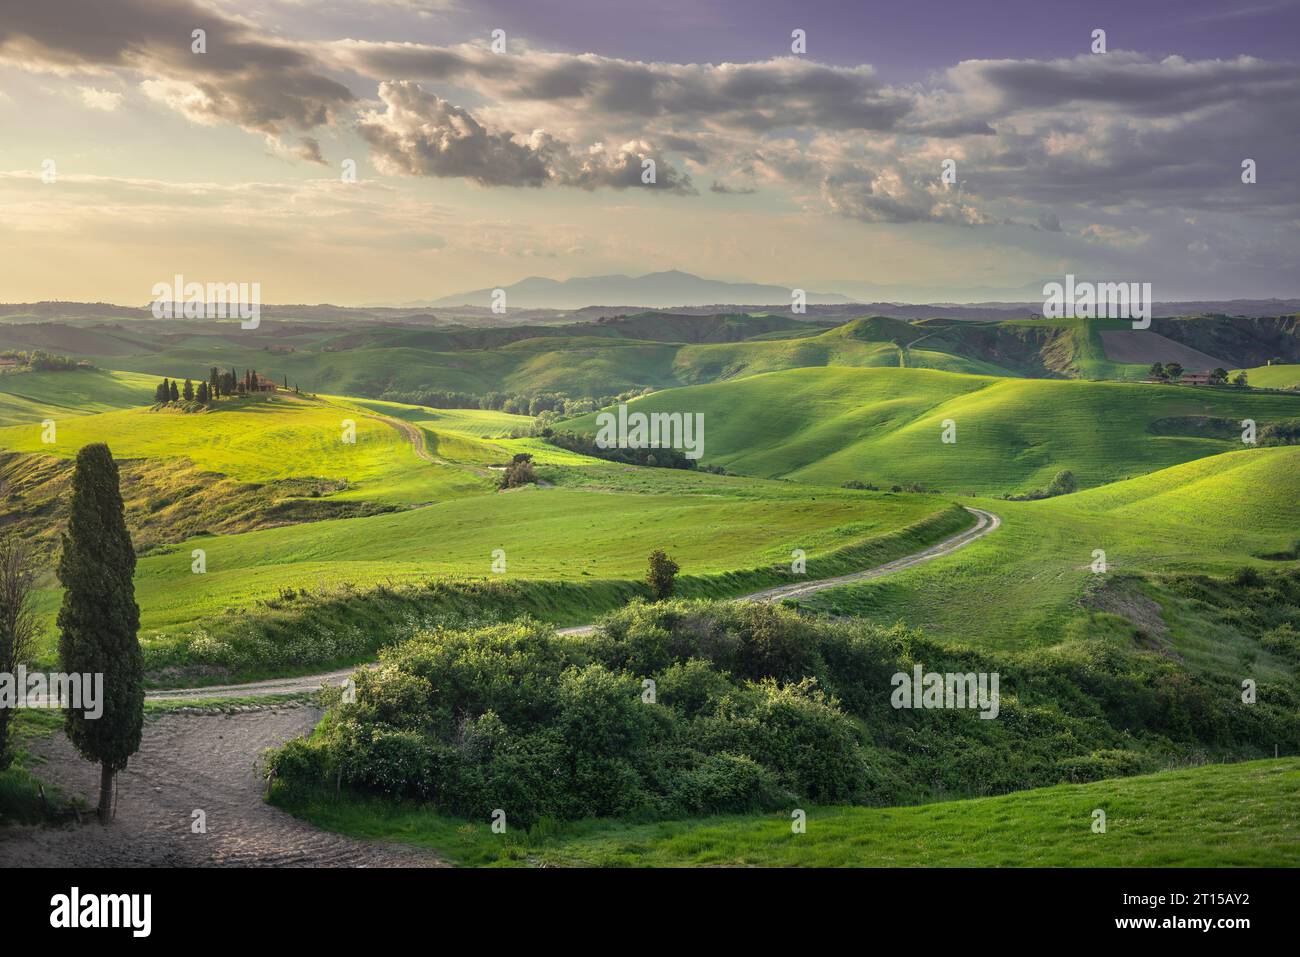 Ländliche Landschaft, sanfte Hügel, ländliche Straße und grüne Felder bei Sonnenuntergang. Volterra, Toskana, Italien, Europa Stockfoto